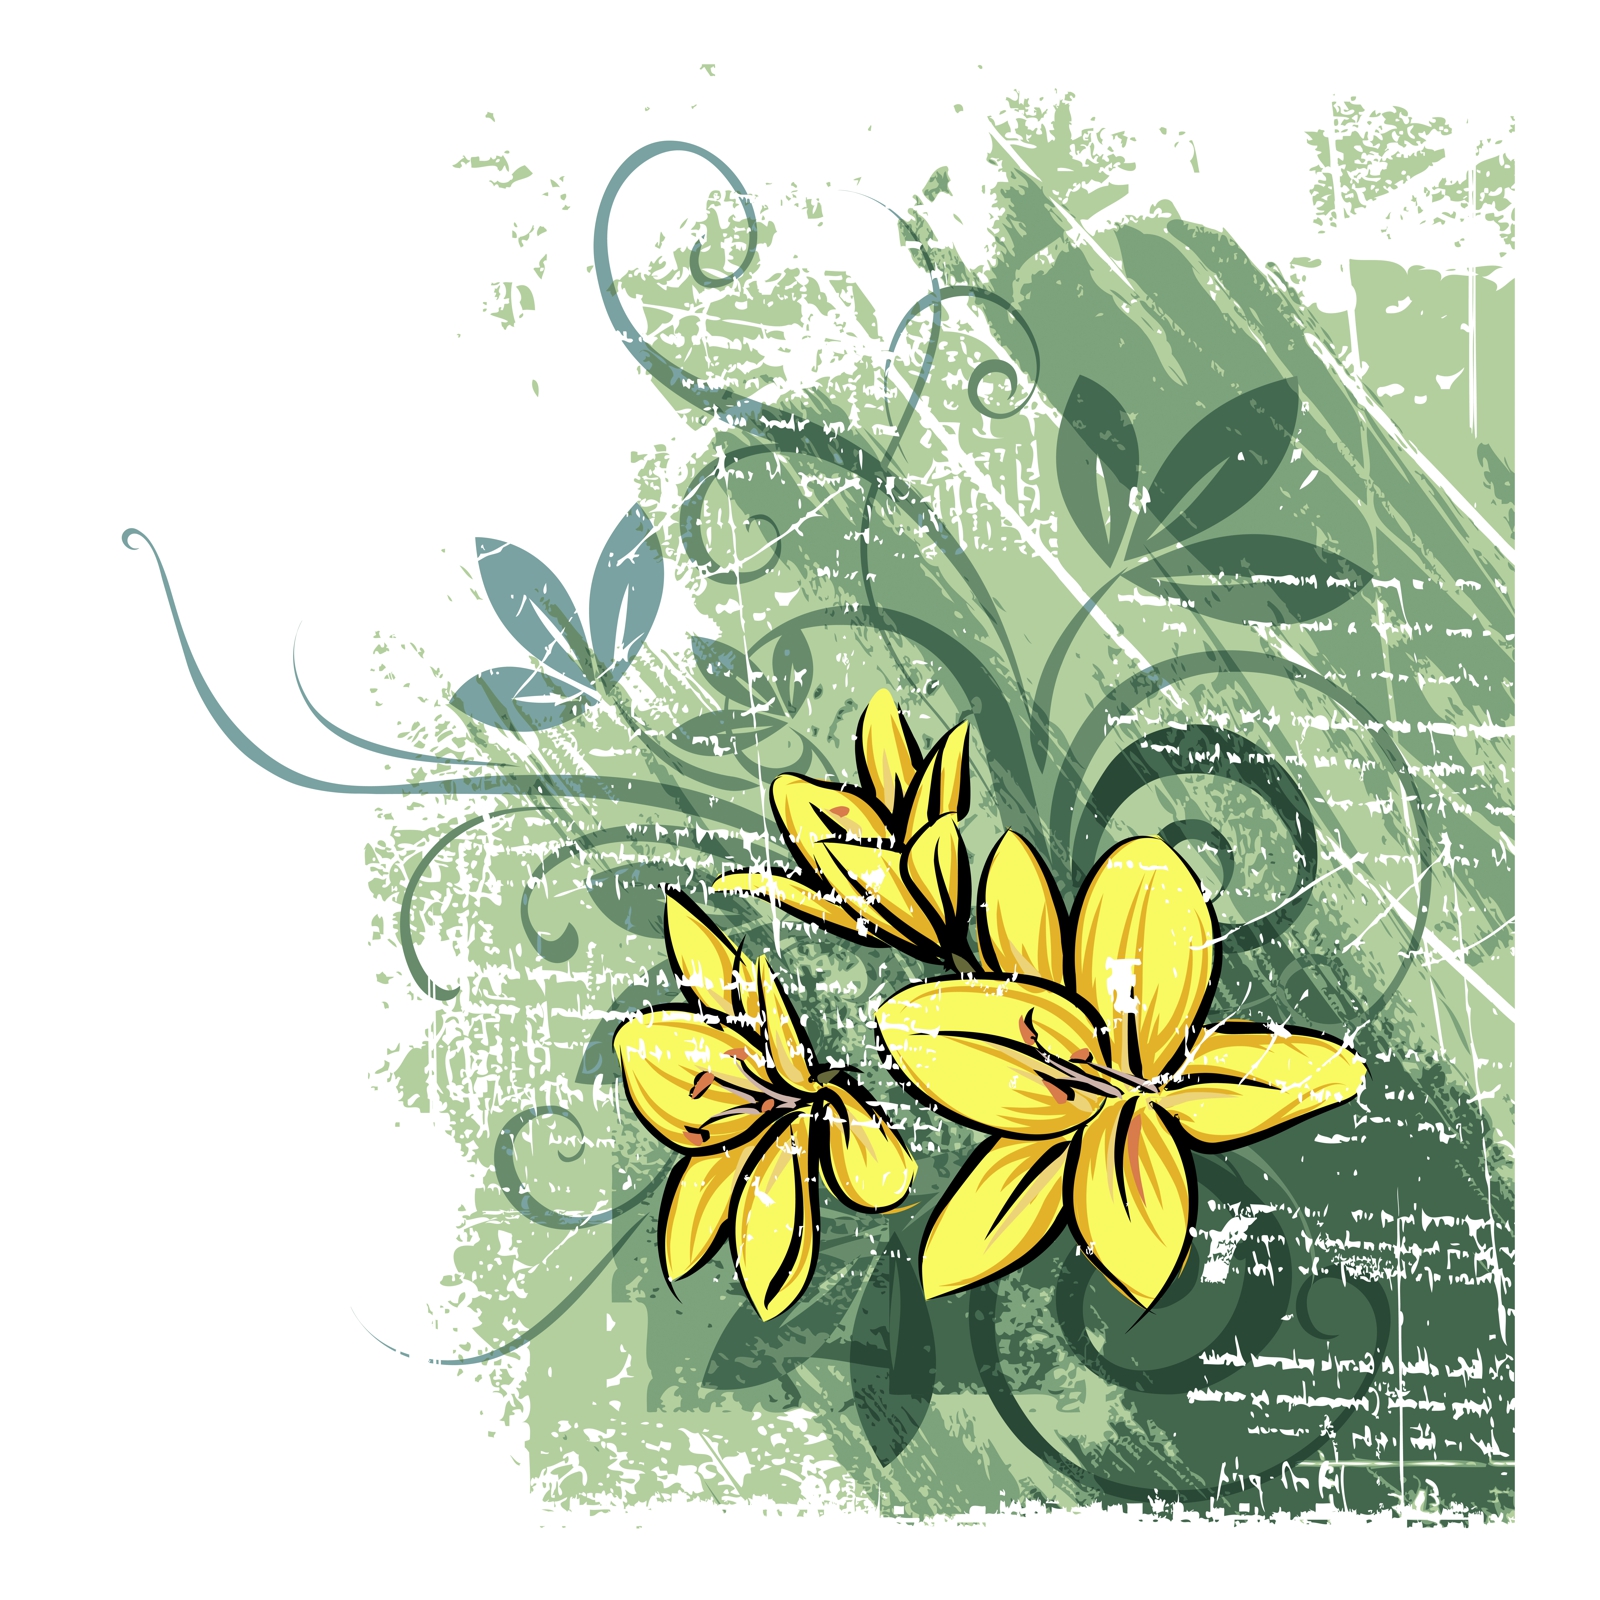 Leinwandbild Bild Wandbild Natur & Blumen Zeichnung modern in gelb und grün